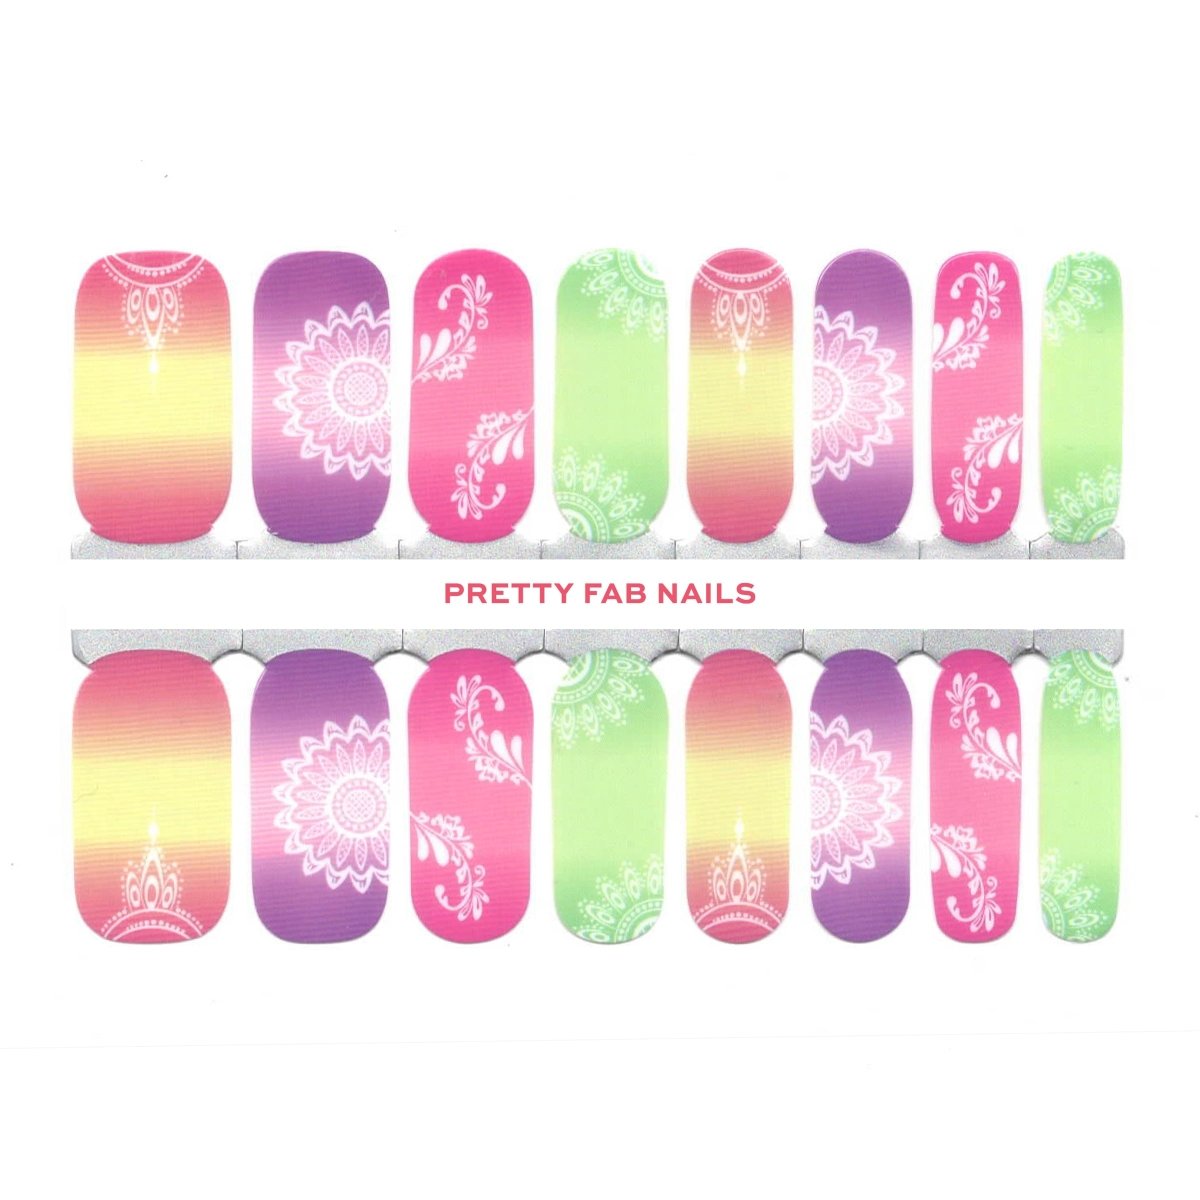 Maui Mandala - Pretty Fab Nails